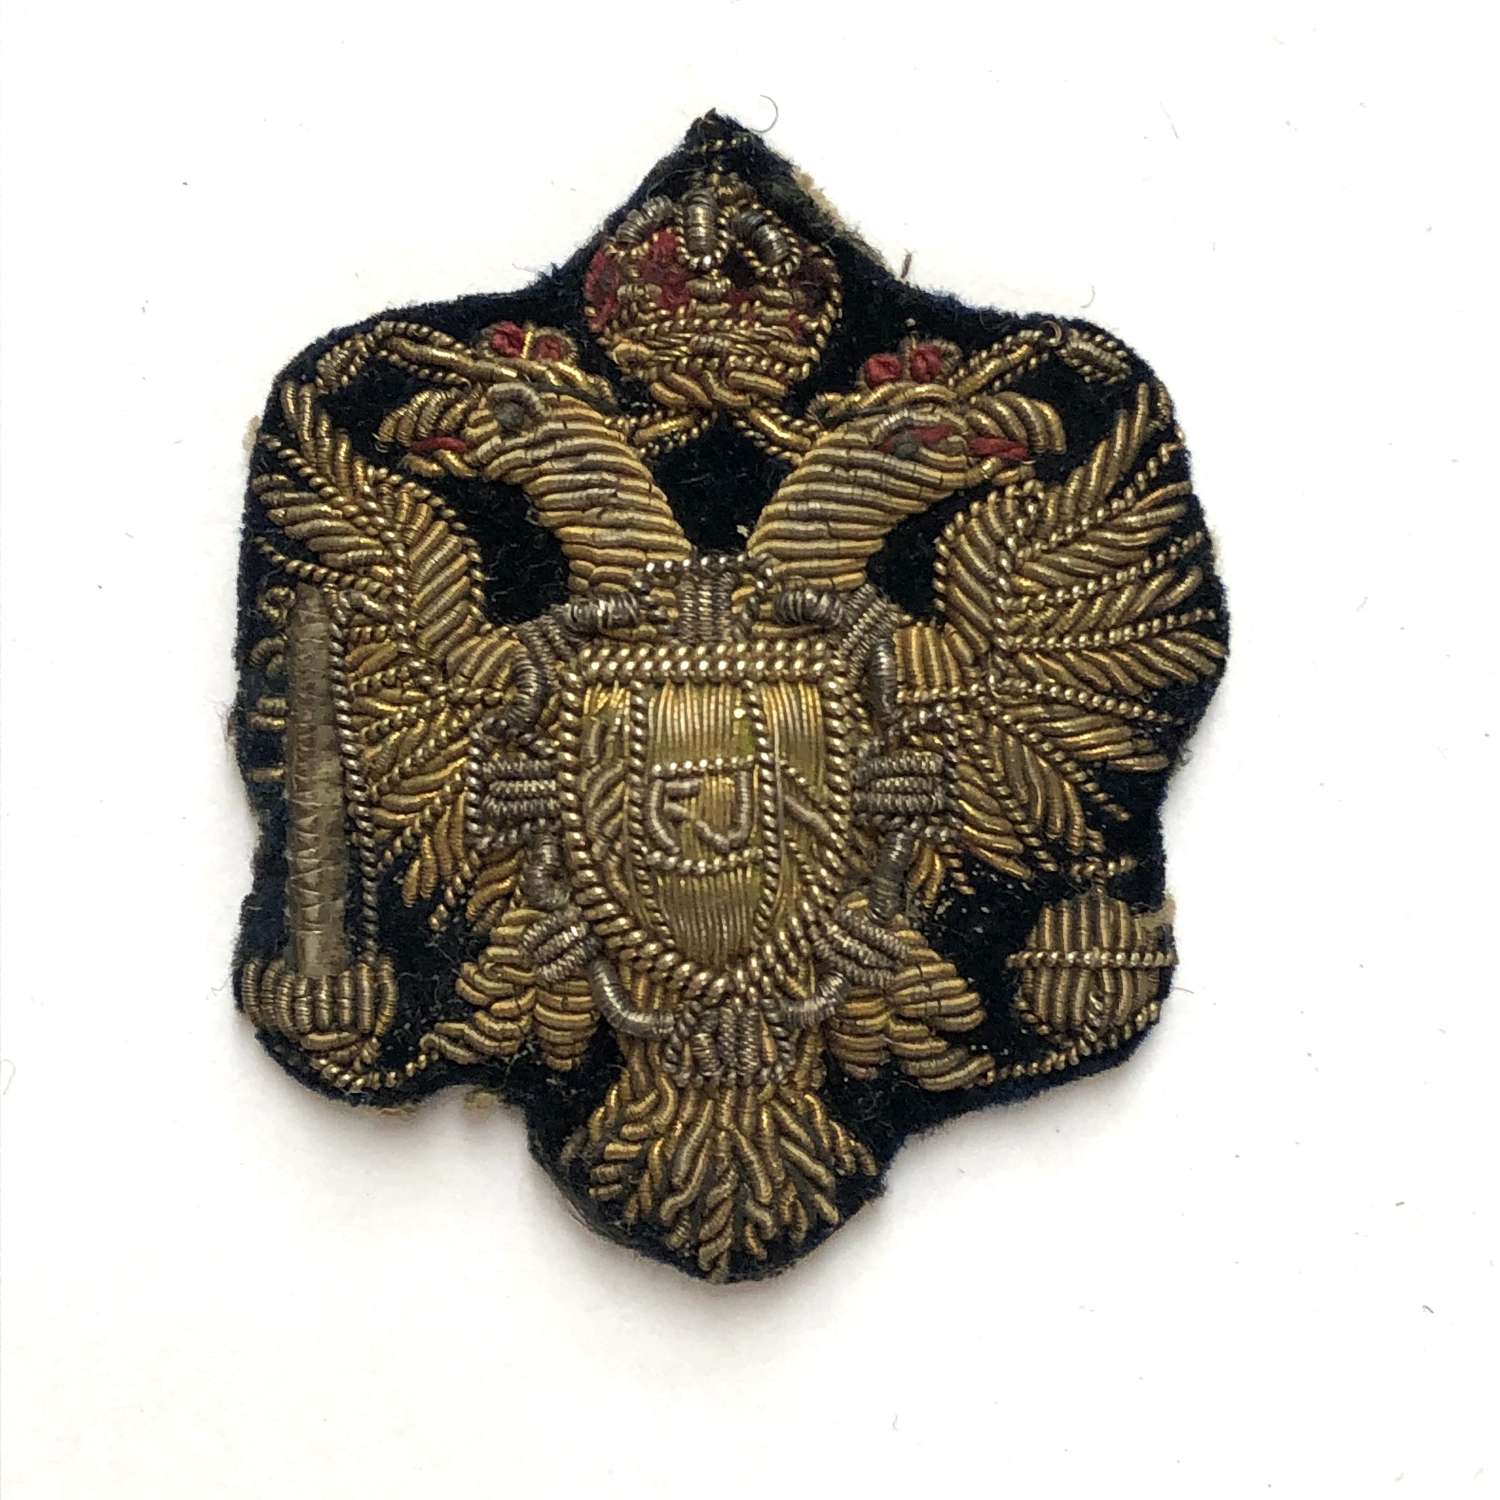 King's Dragoon Guards NCO's arm badge circa 1896-1904